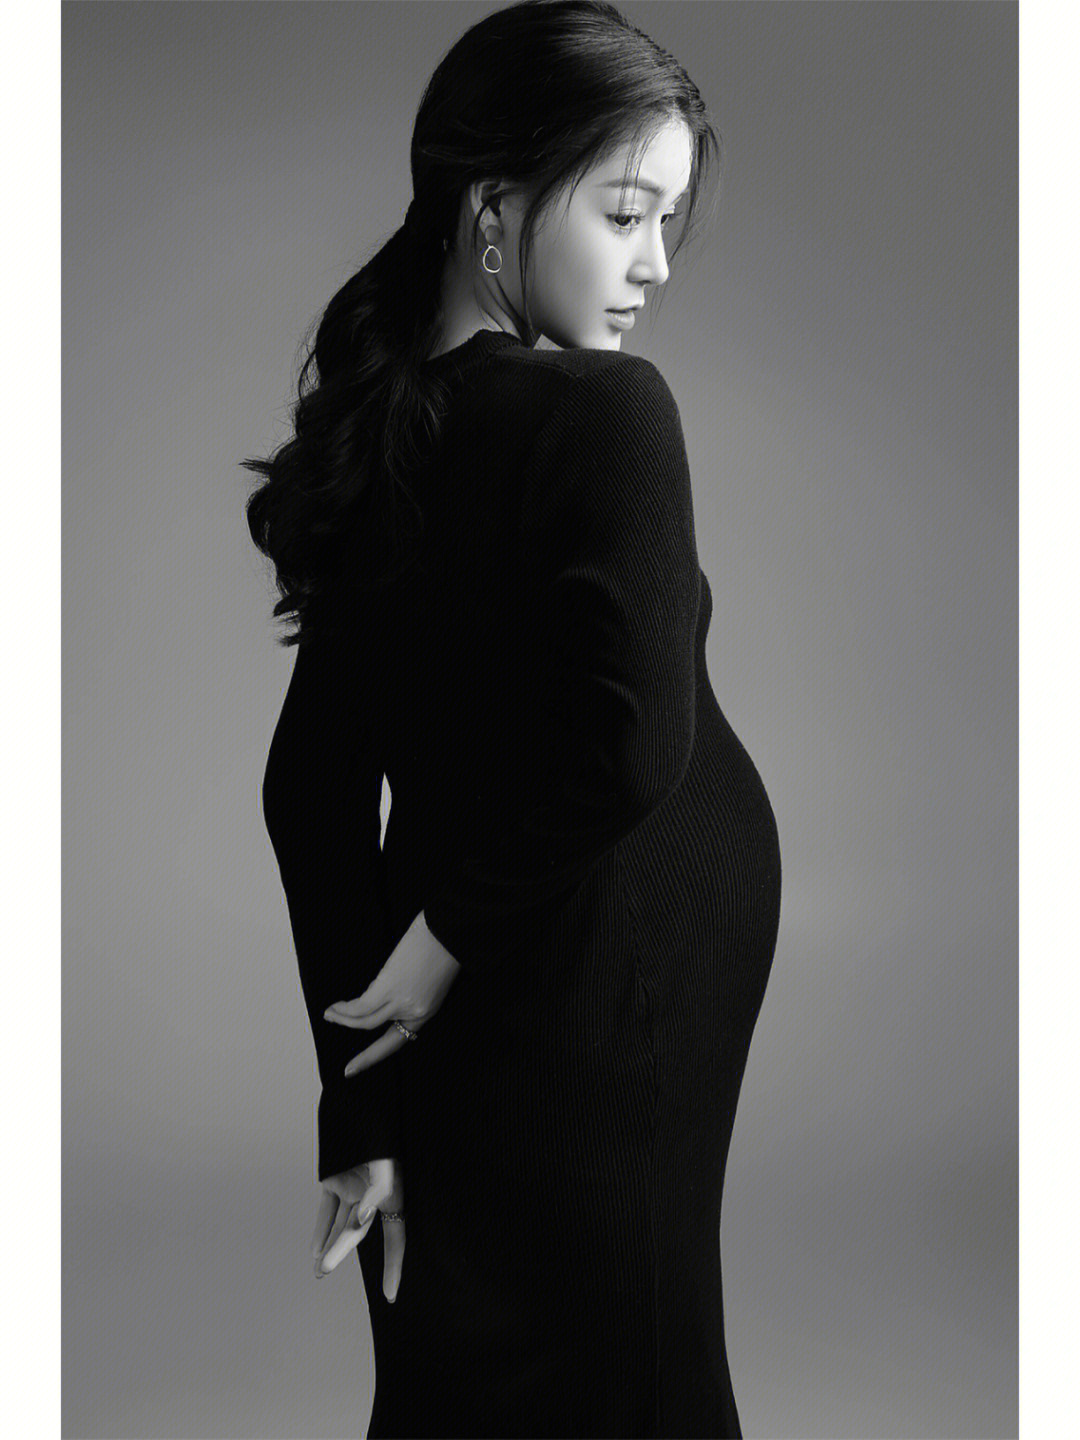 黑白肖像孕妇照质感情绪故事孕妇照